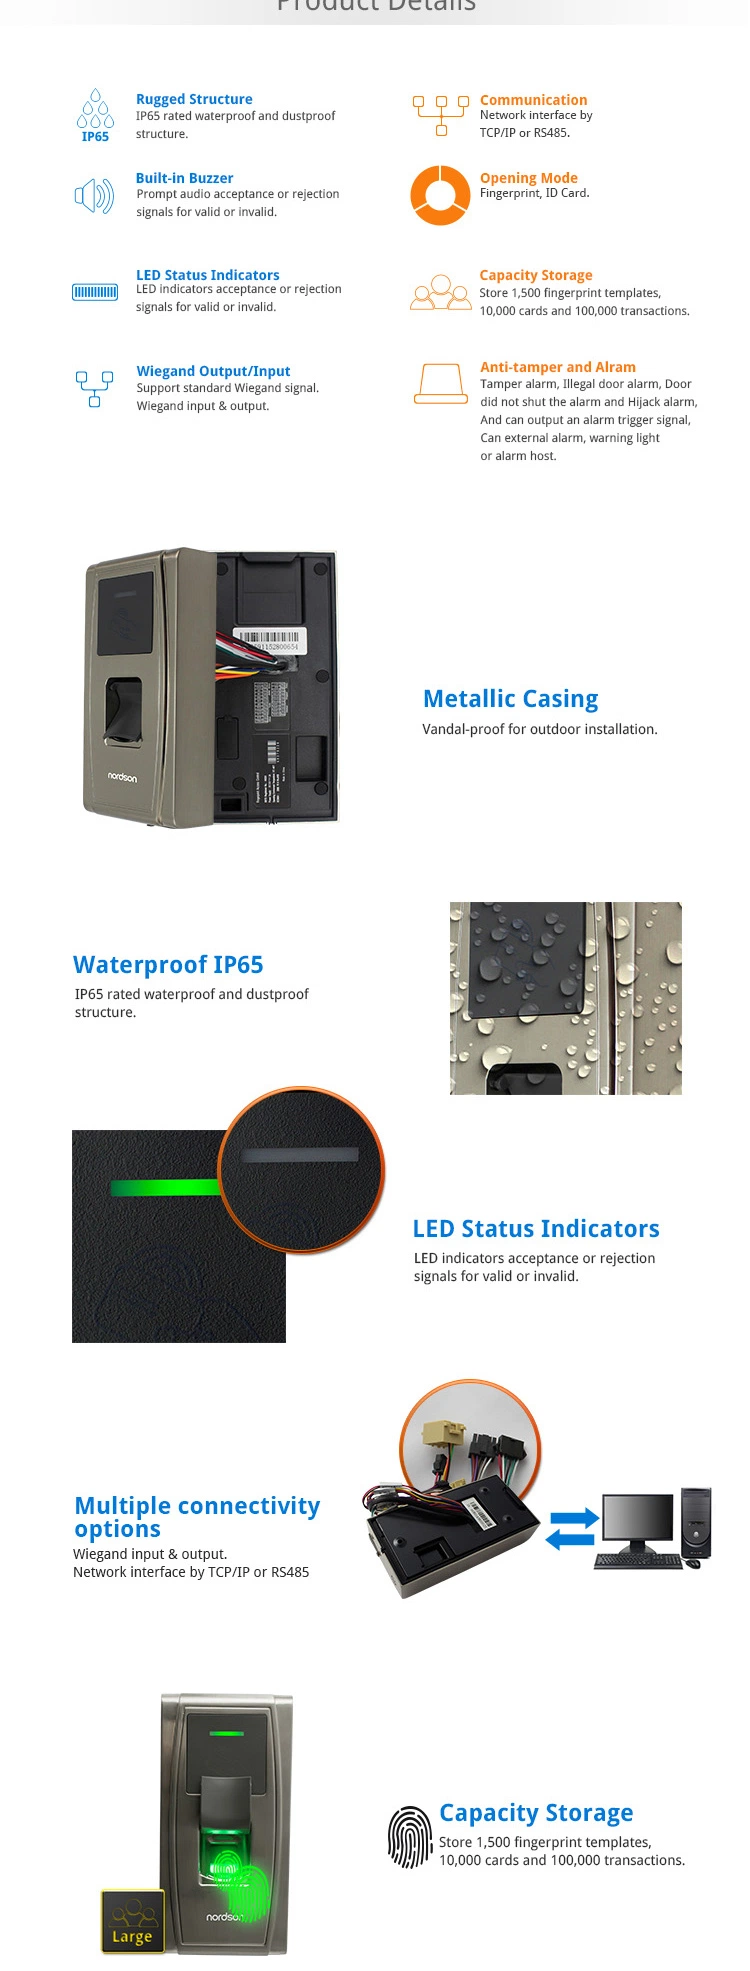 Easy-to-Use Waterproof IP65 Metallic Casing Outdoor Door Lock Fingerprint Access Control Safe System Device